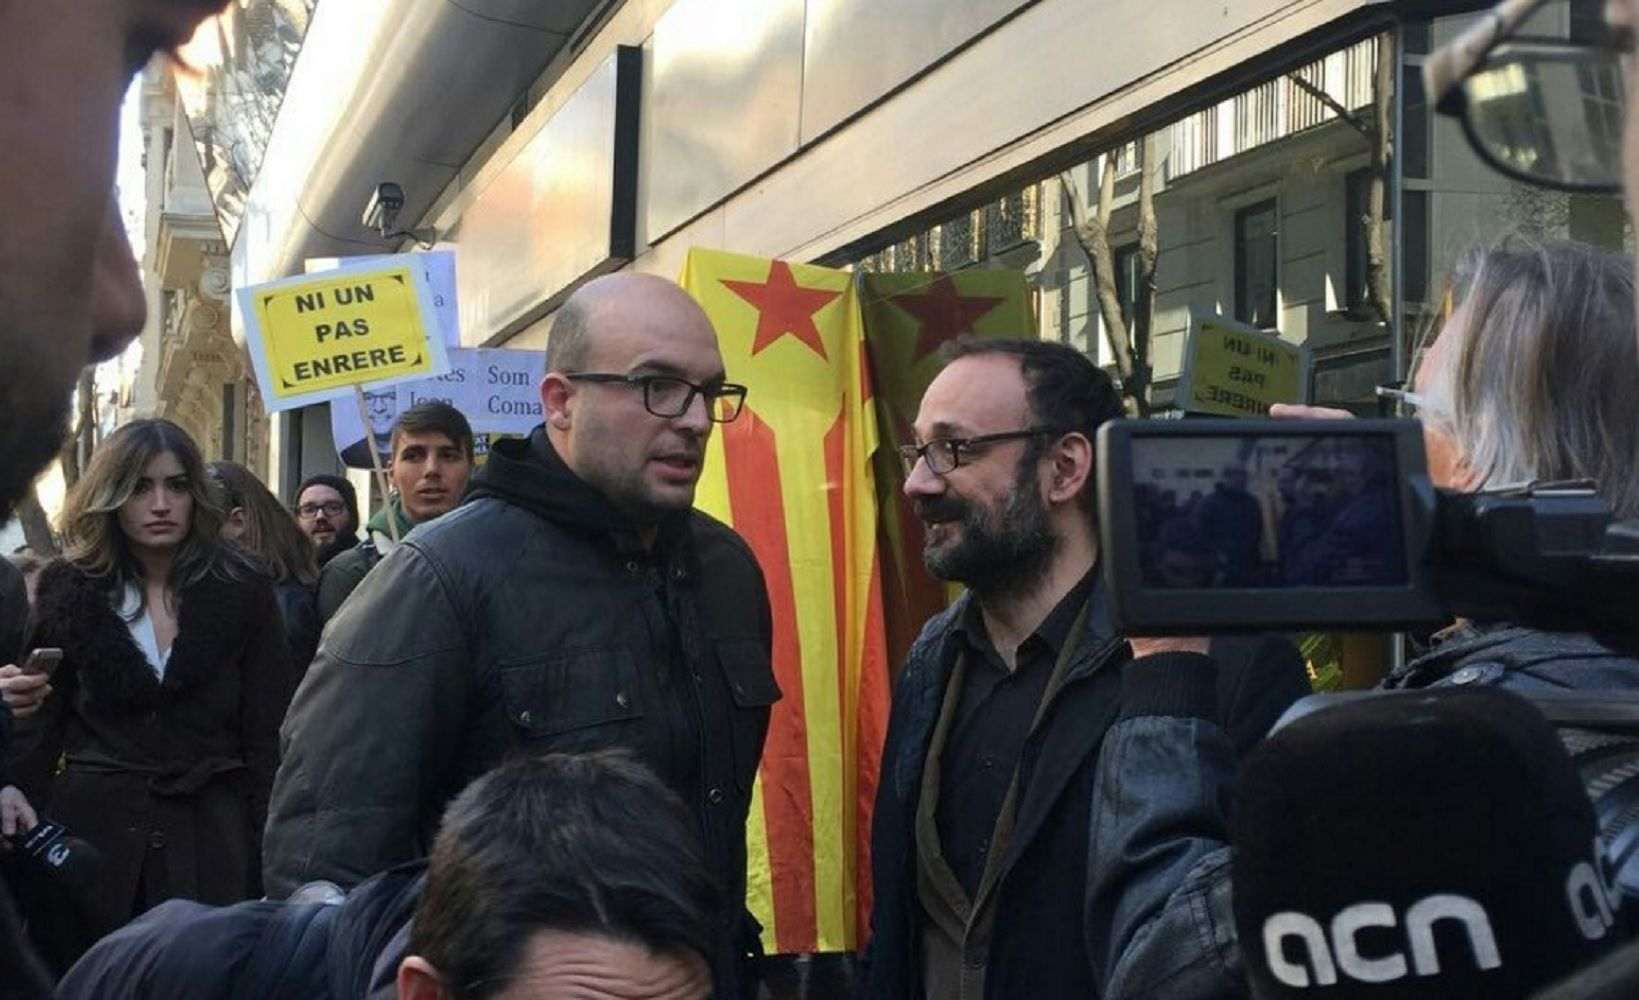 Llibertat amb càrrecs i sense passaport per a Joan Coma